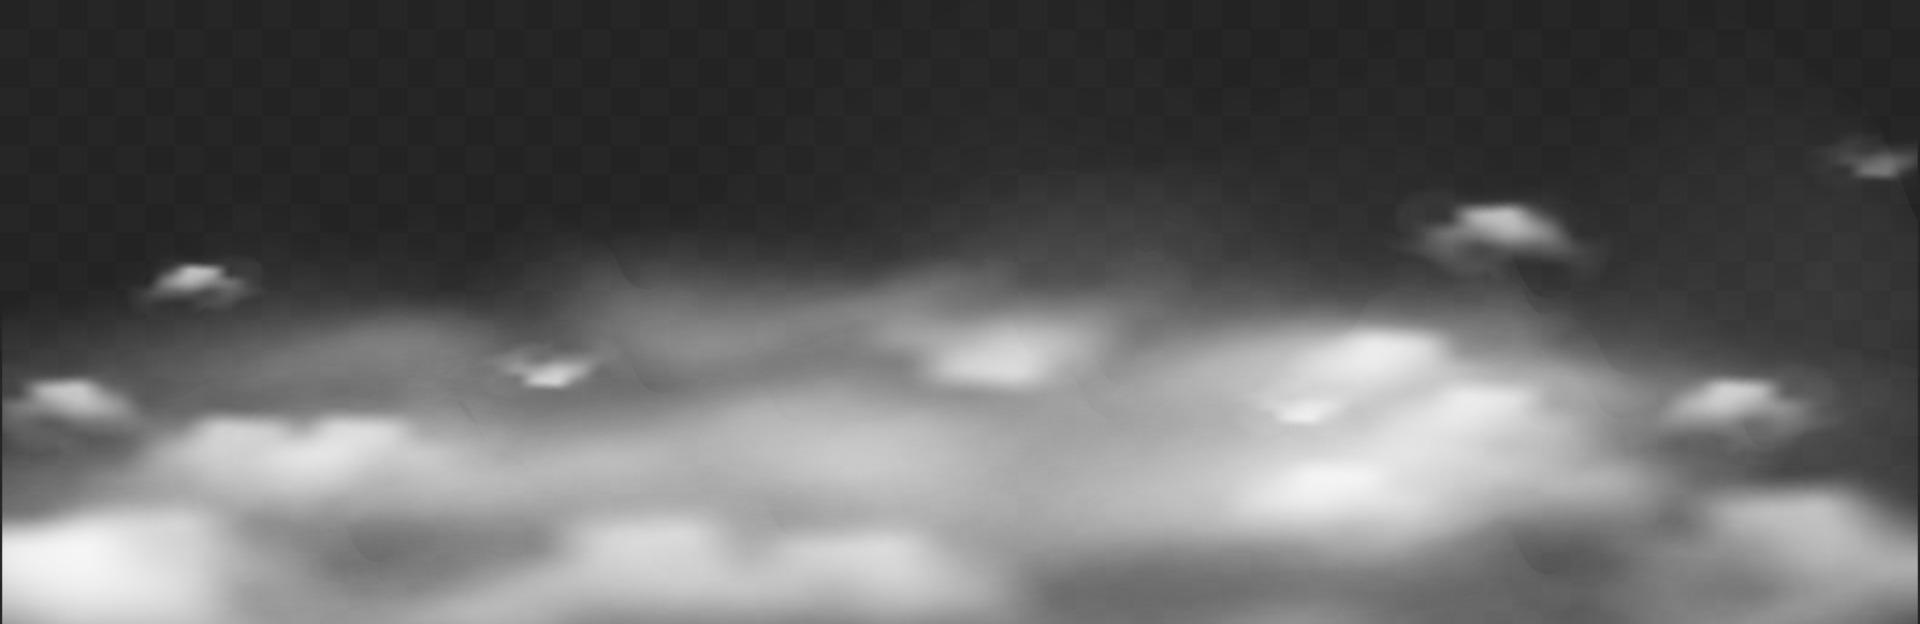 horisontell realistisk dimeffekt. dimma eller moln i rörelse överlägg vektor